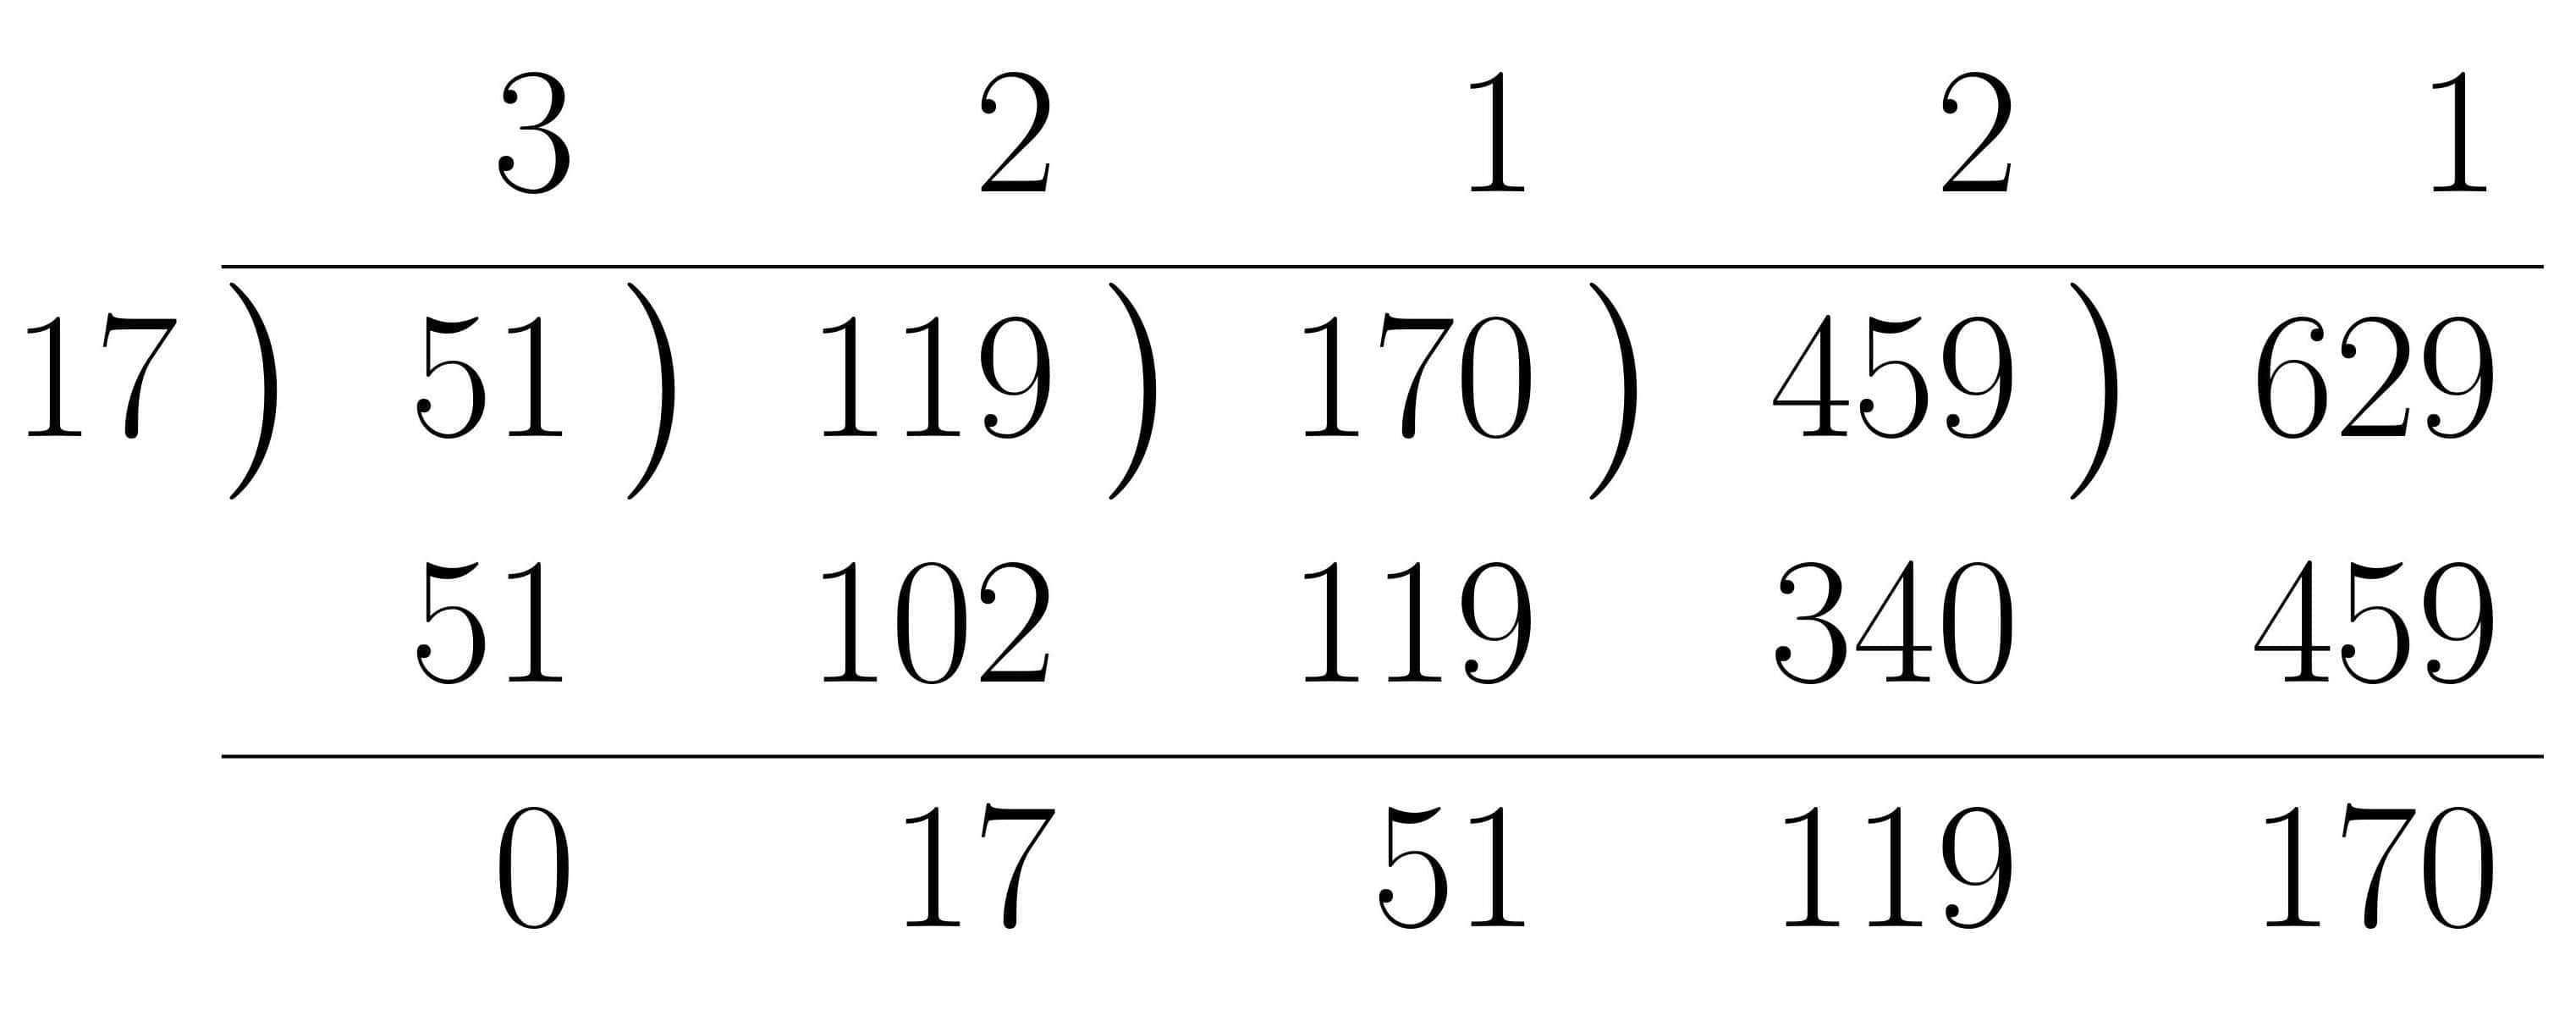 ユークリッドの互除法の計算法練習2